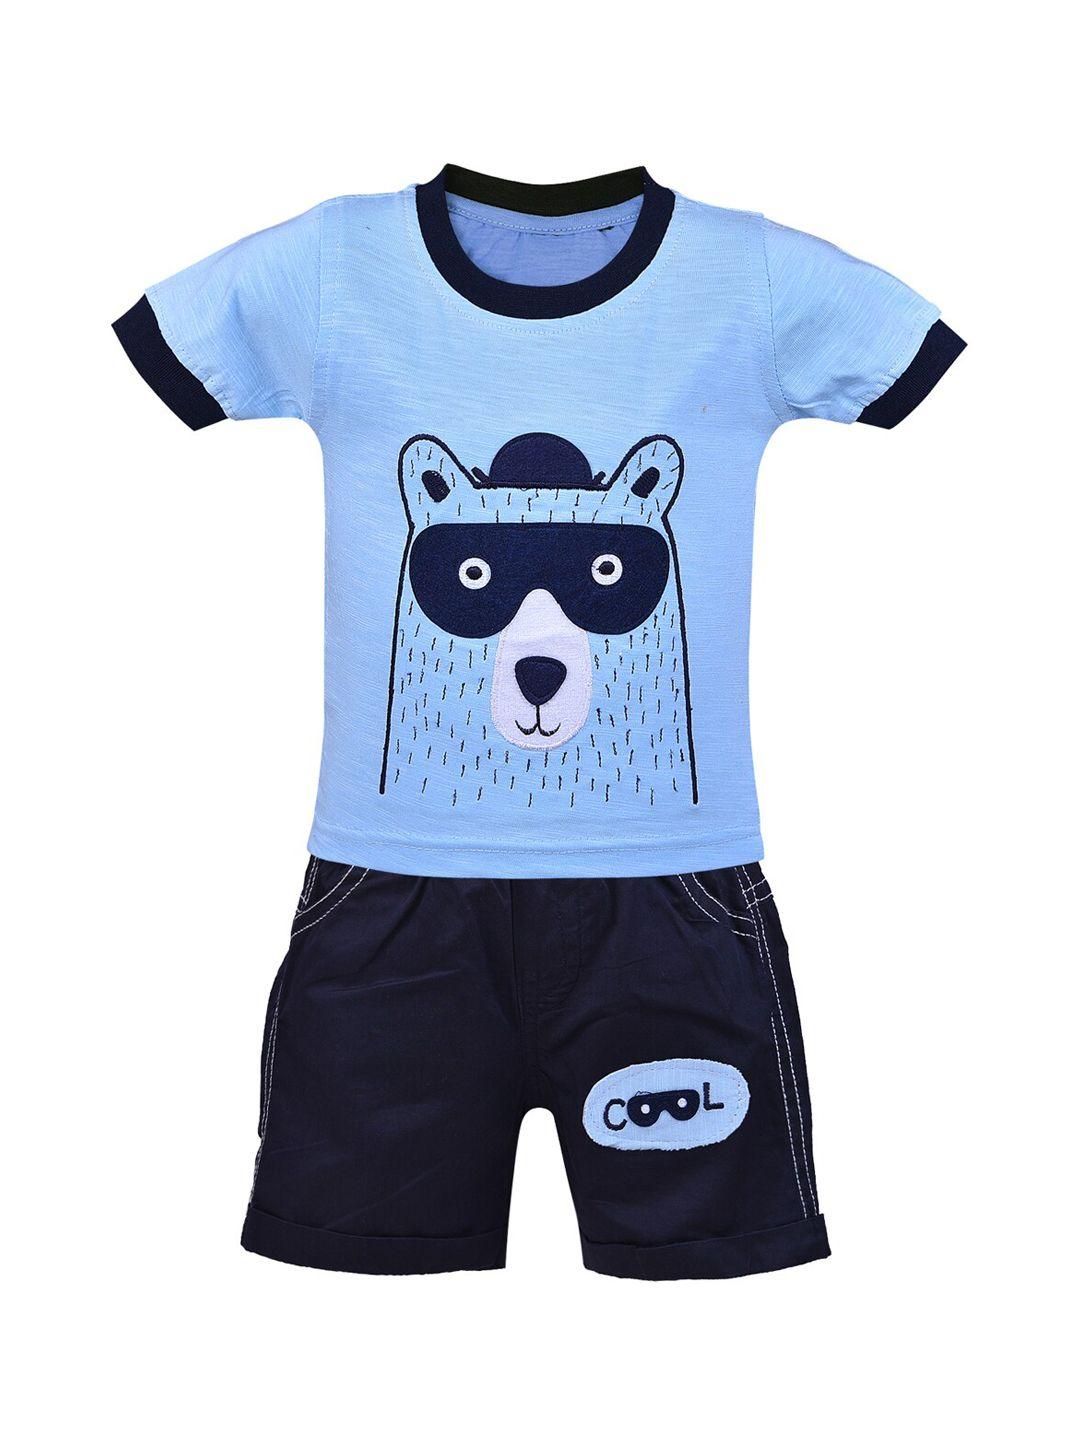 wish karo kids blue & black printed t-shirt with shorts